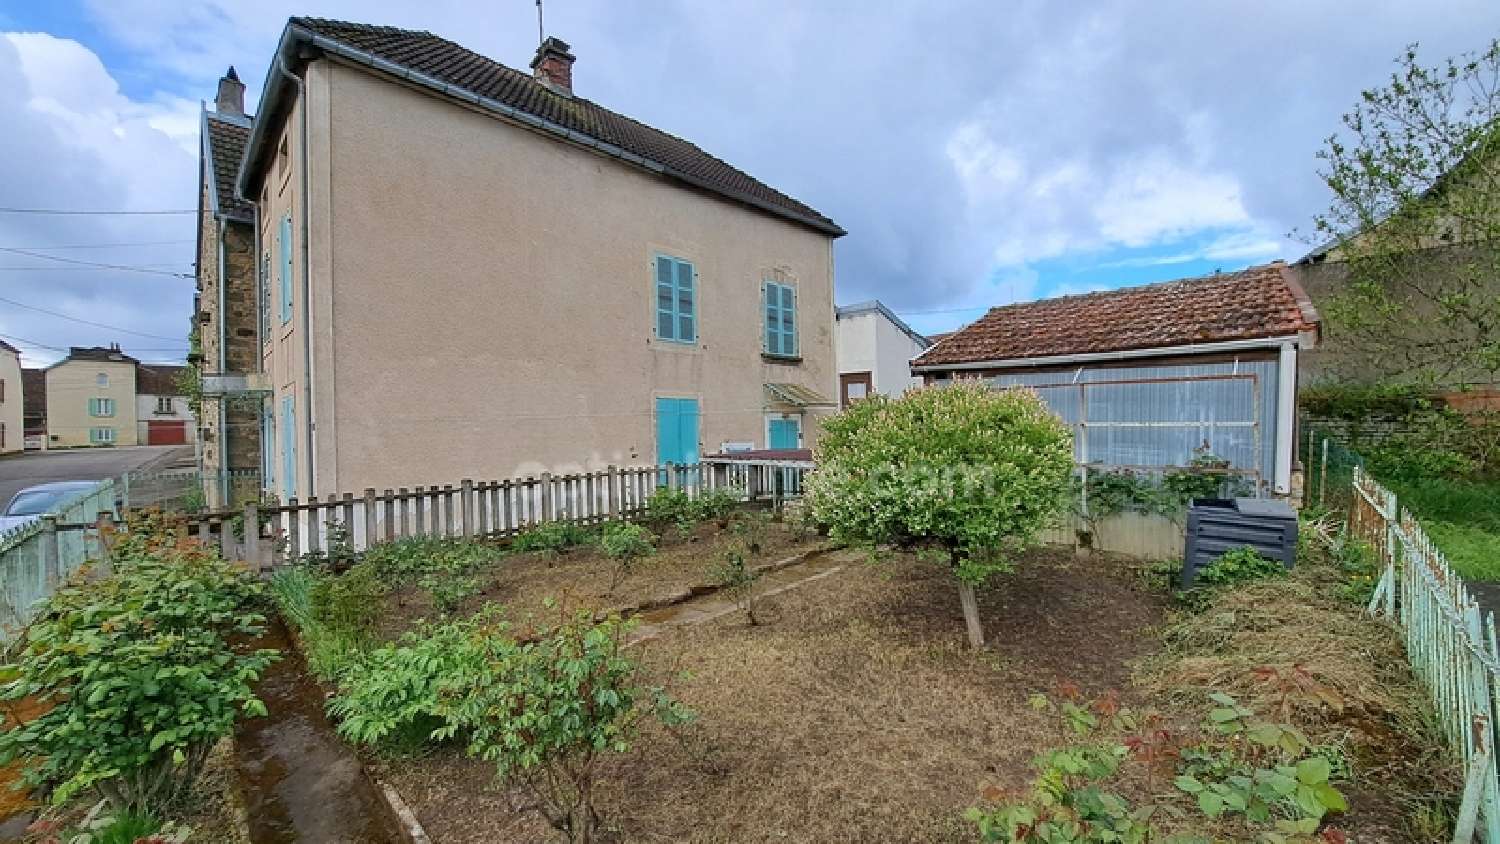  à vendre maison de village Vitrey-sur-Mance Haute-Saône 2